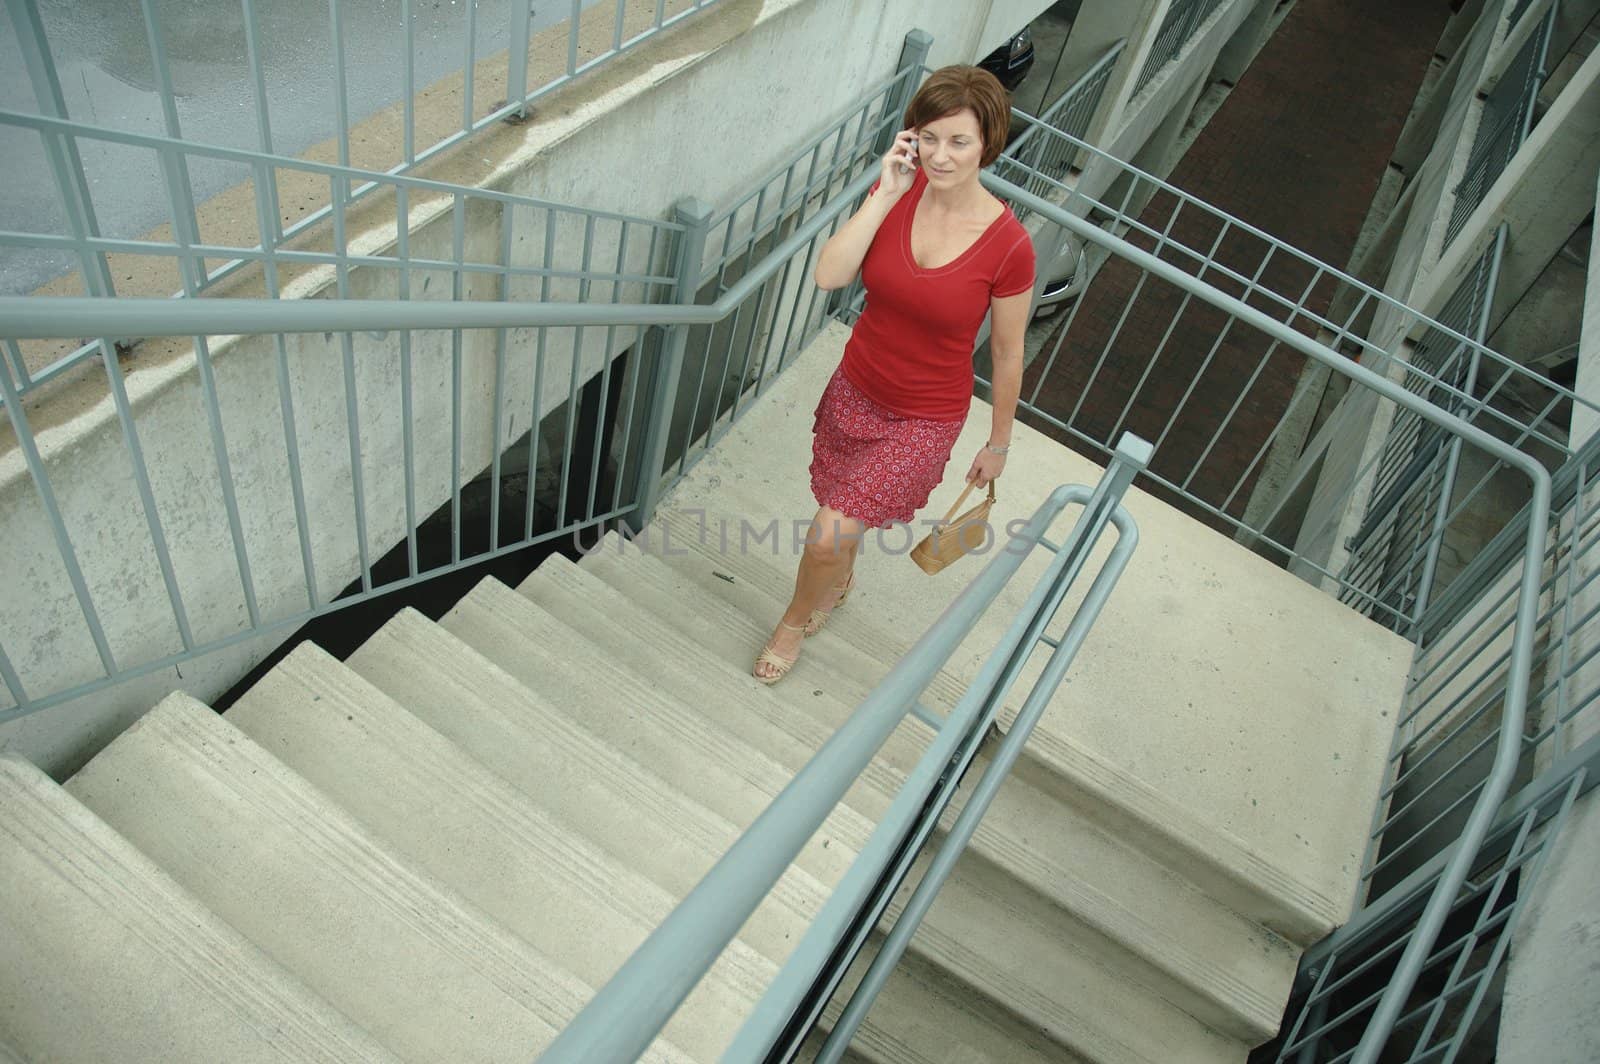 Urban woman walking up stairs.